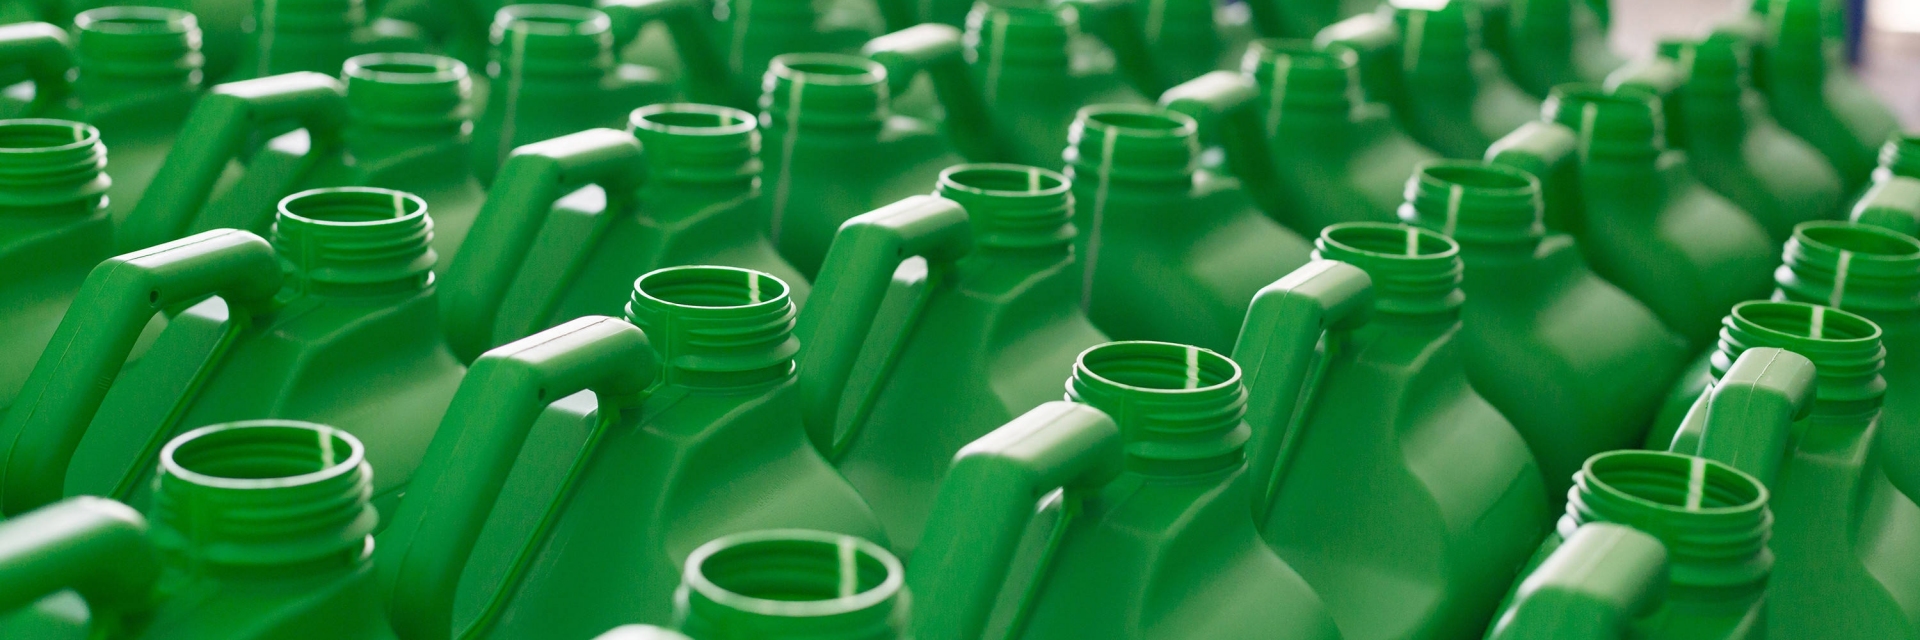 A indústria de plásticos inclui a produção de resinas plásticas, a fabricação de produtos 
plásticos acabados (como embalagens, utensílios domésticos, componentes 
automotivos), reciclagem de plásticos e a produção de bioplásticos.